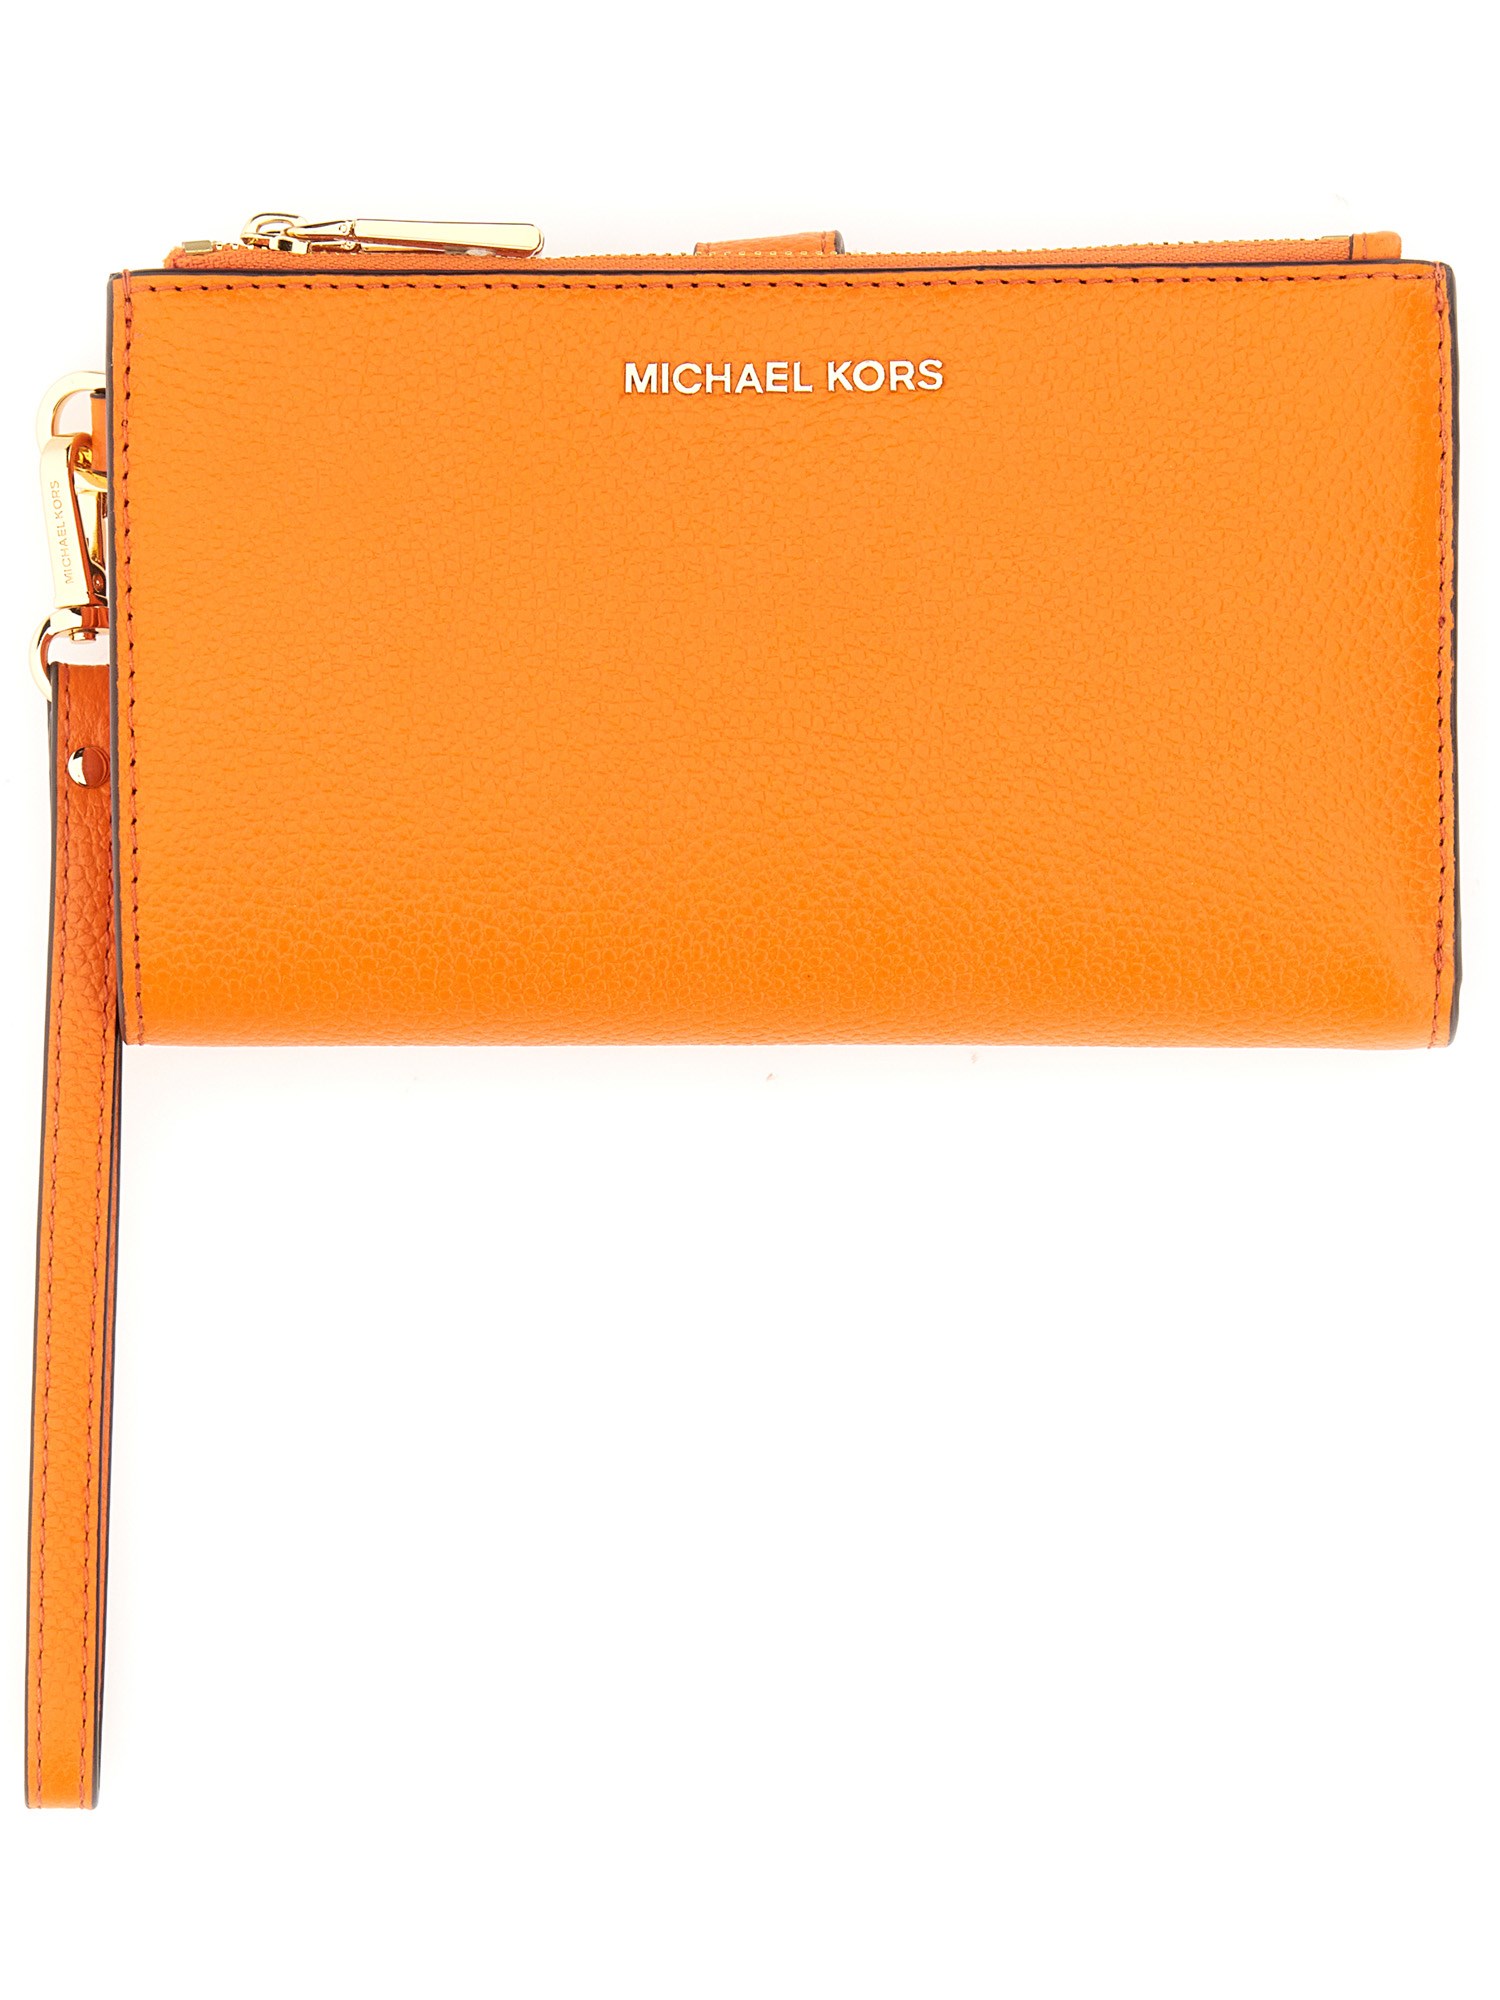 Michael Michael Kors Jet Set Wallet In Orange